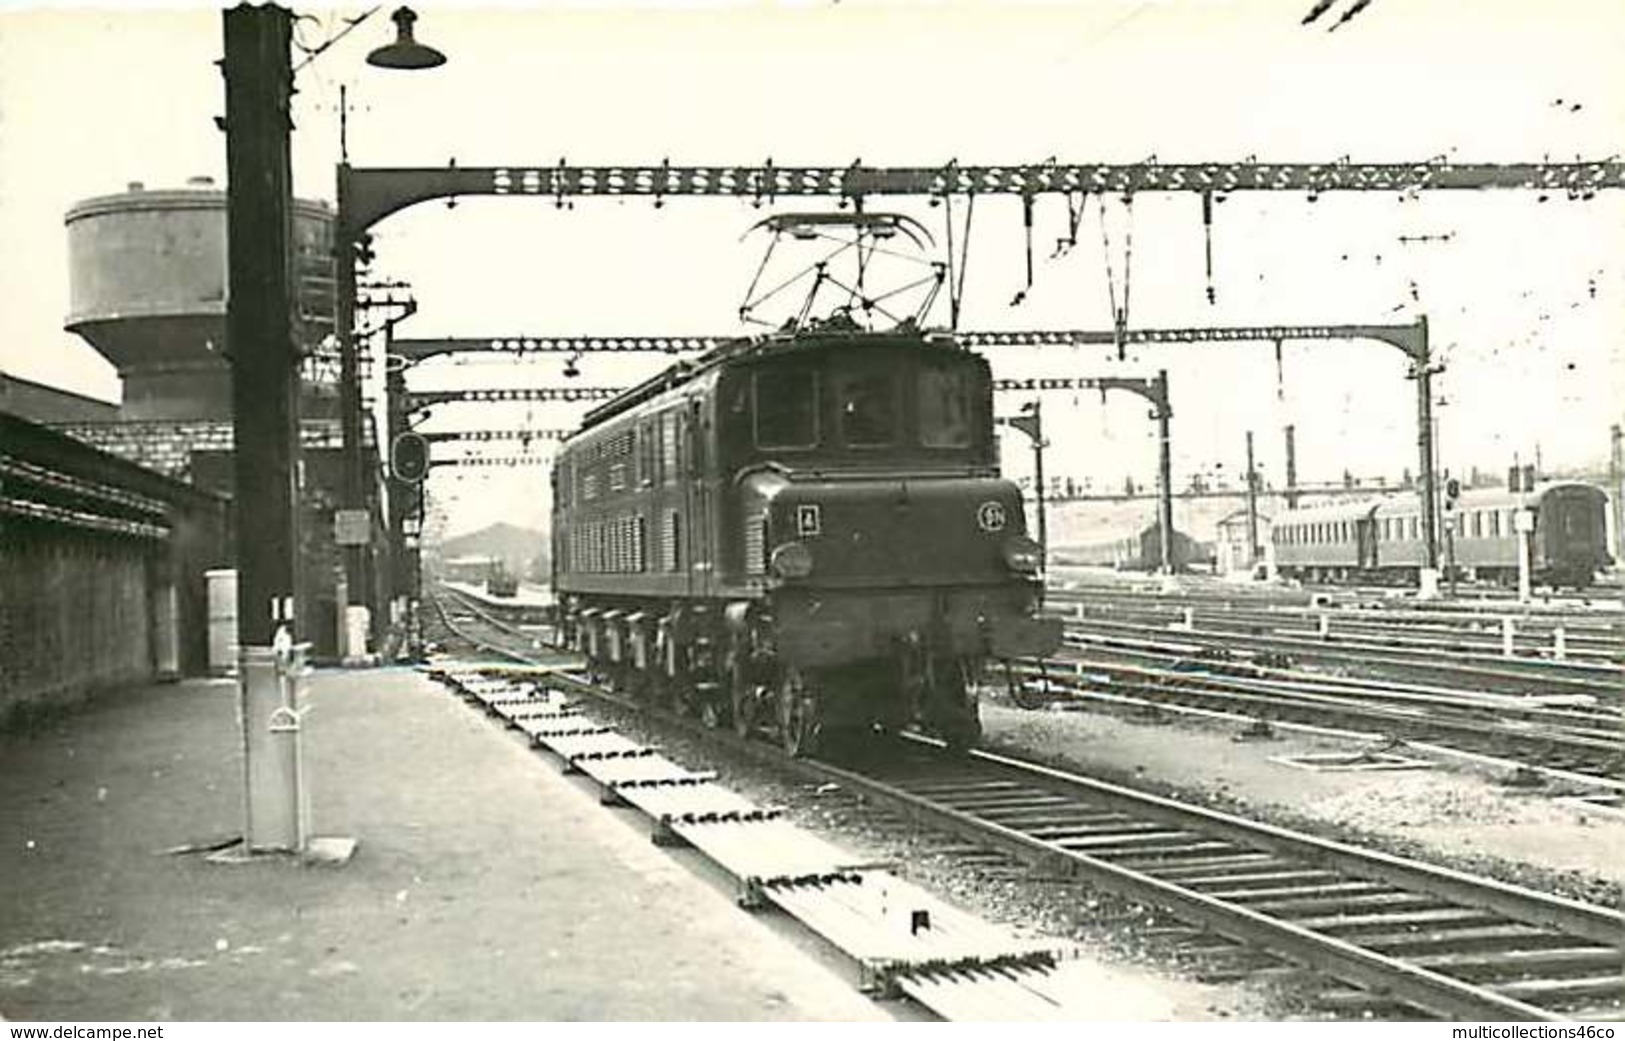 060120 TRANSPORT TRAIN CHEMIN DE FER - PHOTO BREHERET Circa 1950 - 75 Gare D'Austerlitz La 2D2 5301 SNCF - Pariser Métro, Bahnhöfe